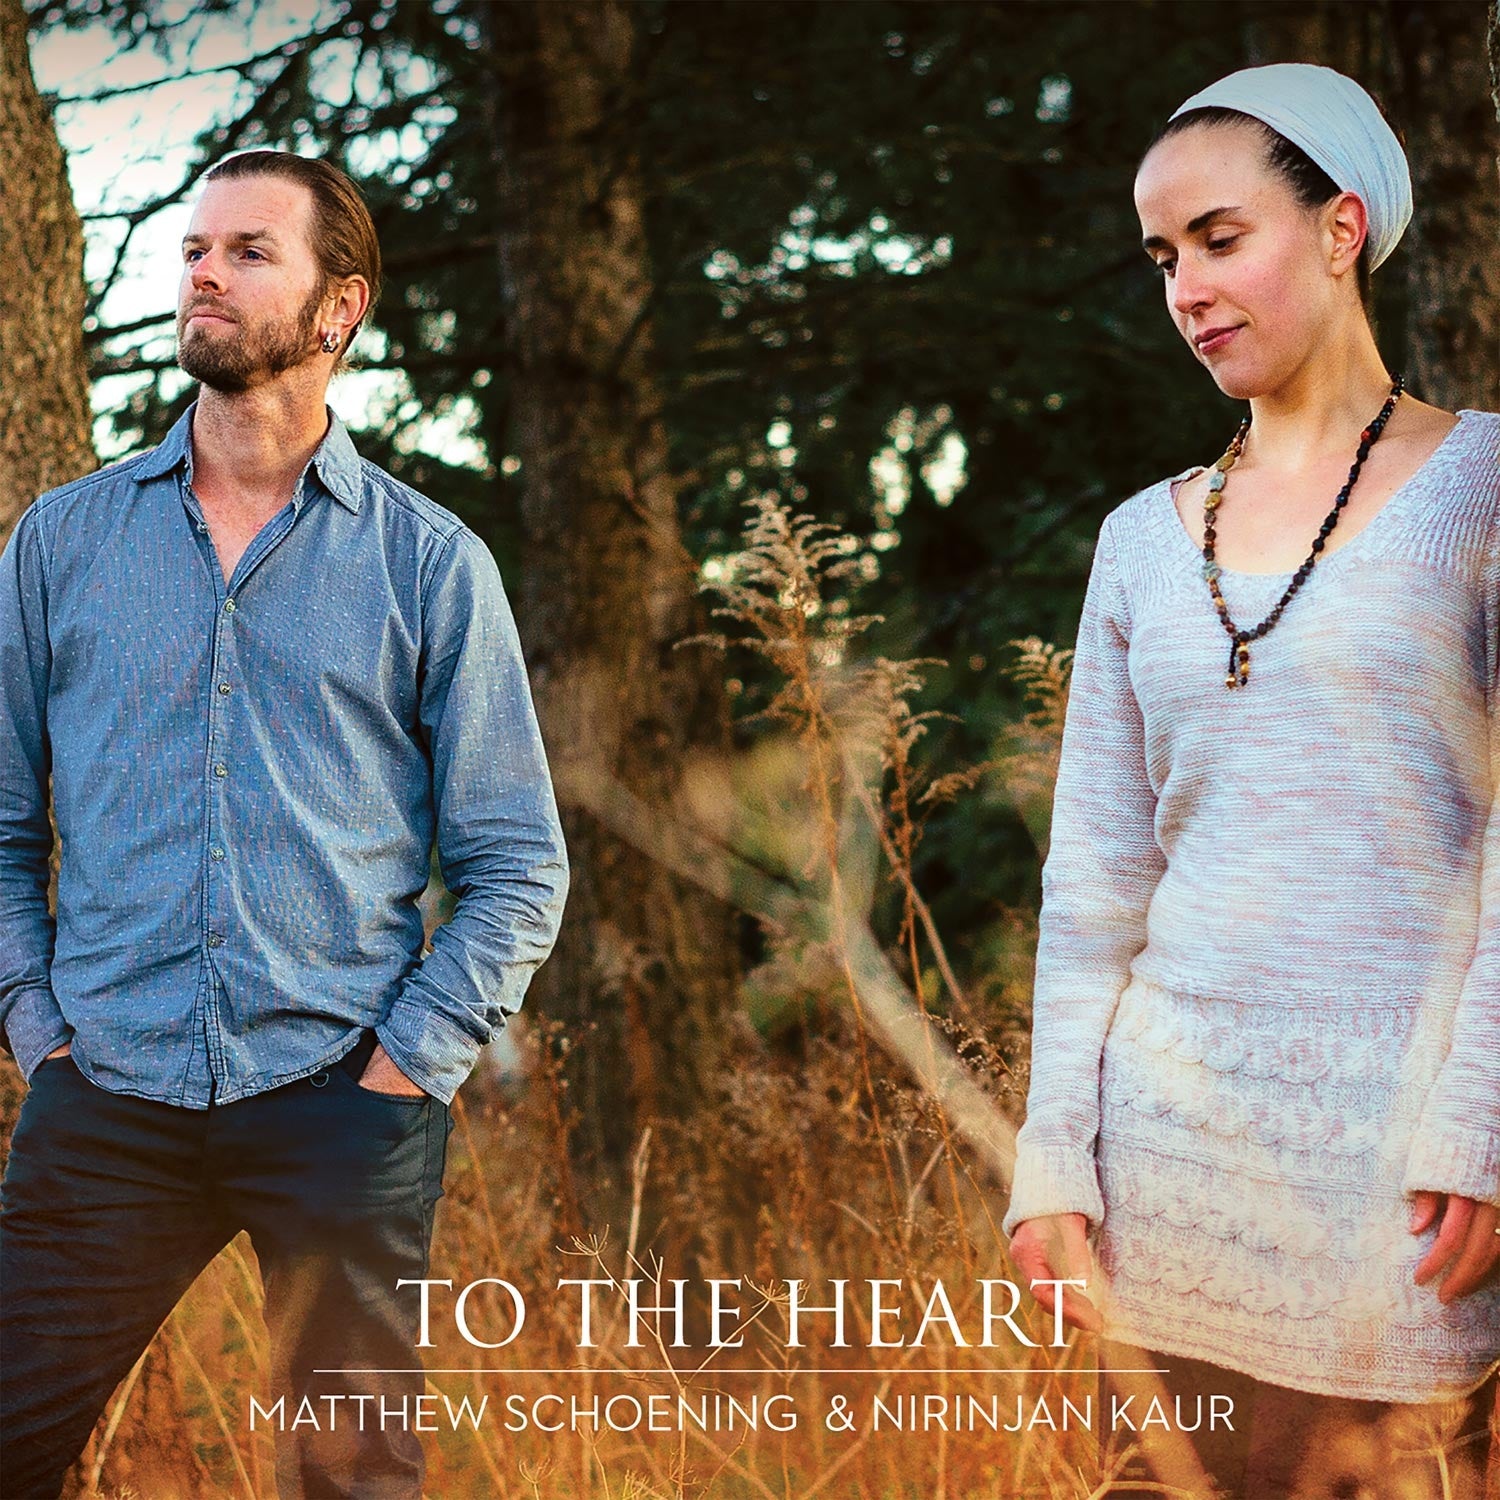 To the Heart - Matthew Schoening & Nirinjan Kaur komplett